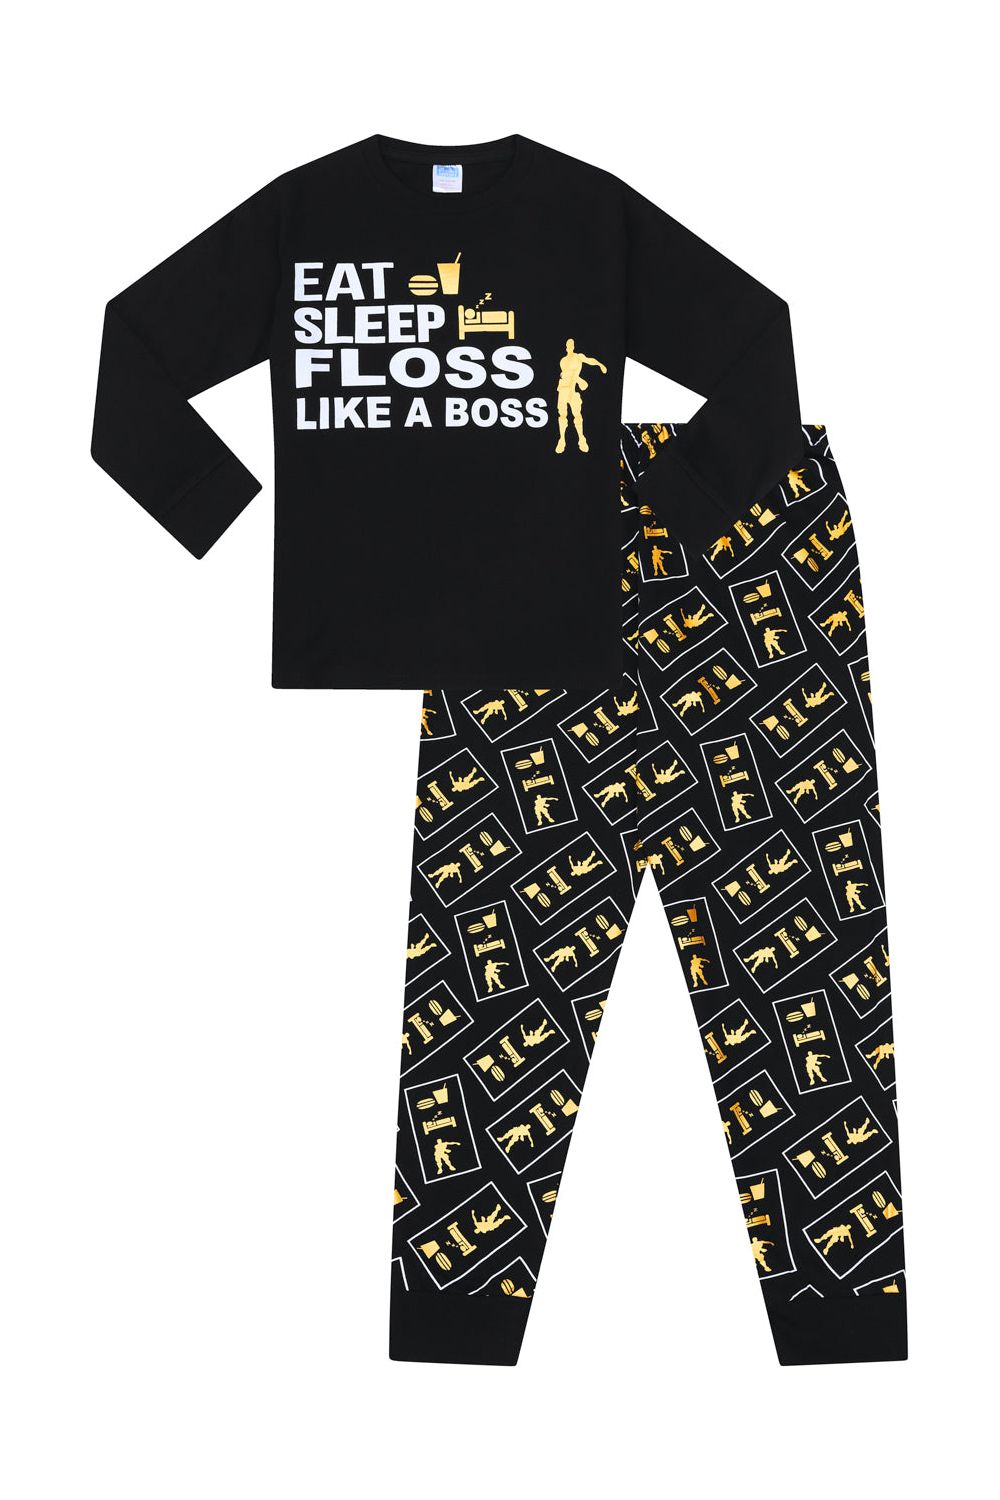 Floss like a boss - Fortnite pyjamas set